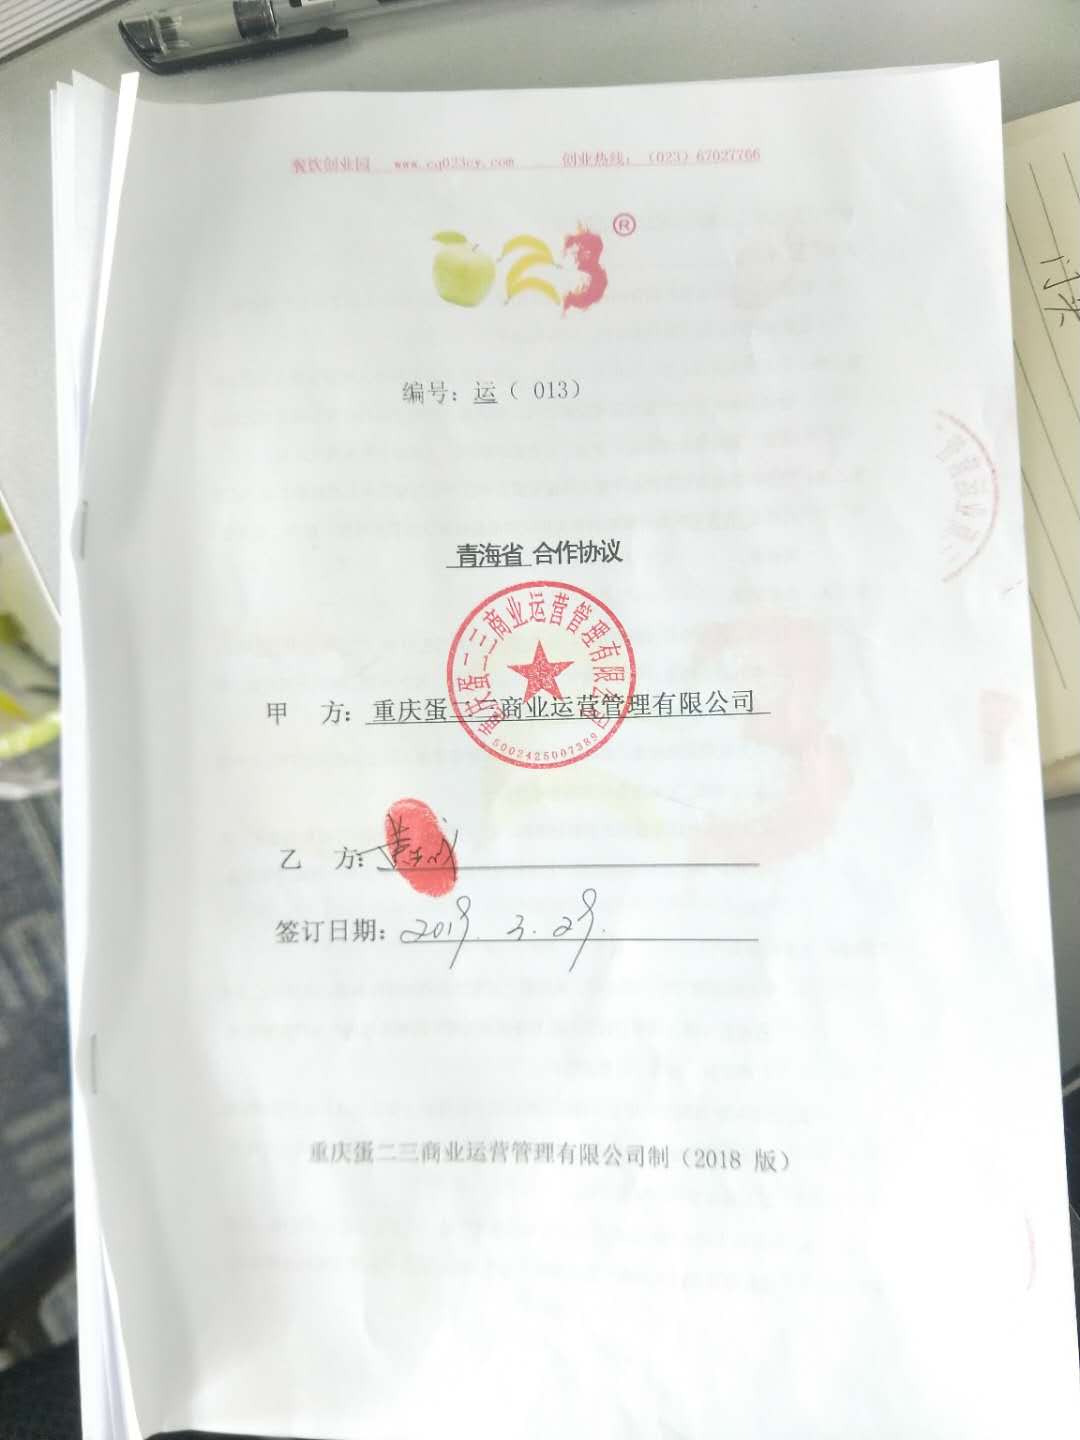 考察不断，签约不断，恭喜青海省黄董事长成功签约子公司。